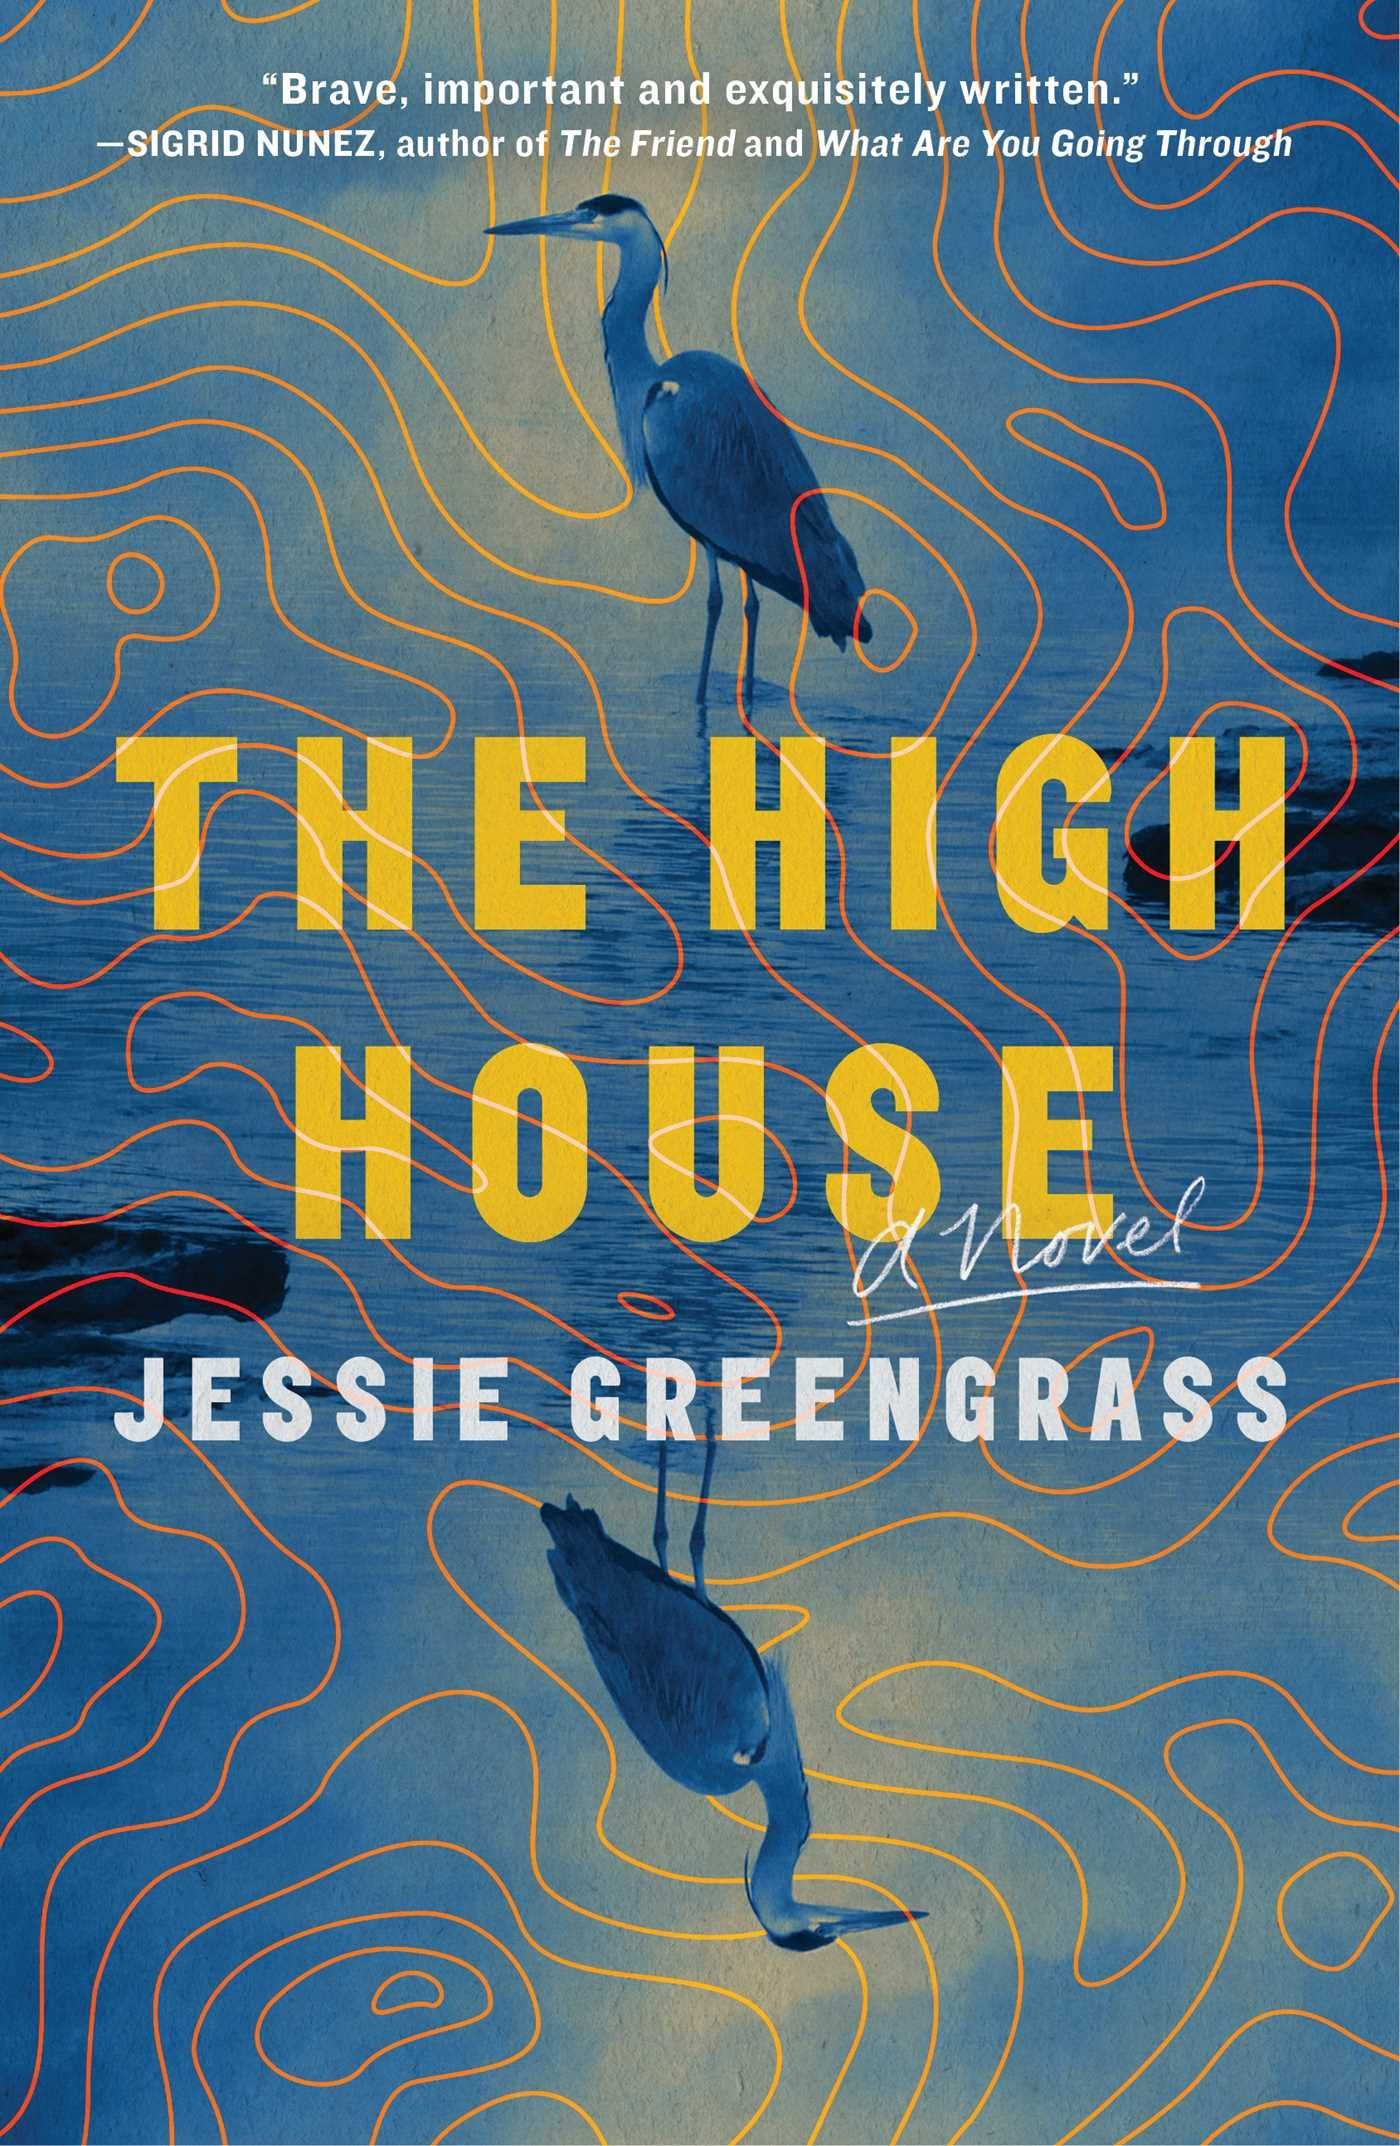 The High House: A Novel